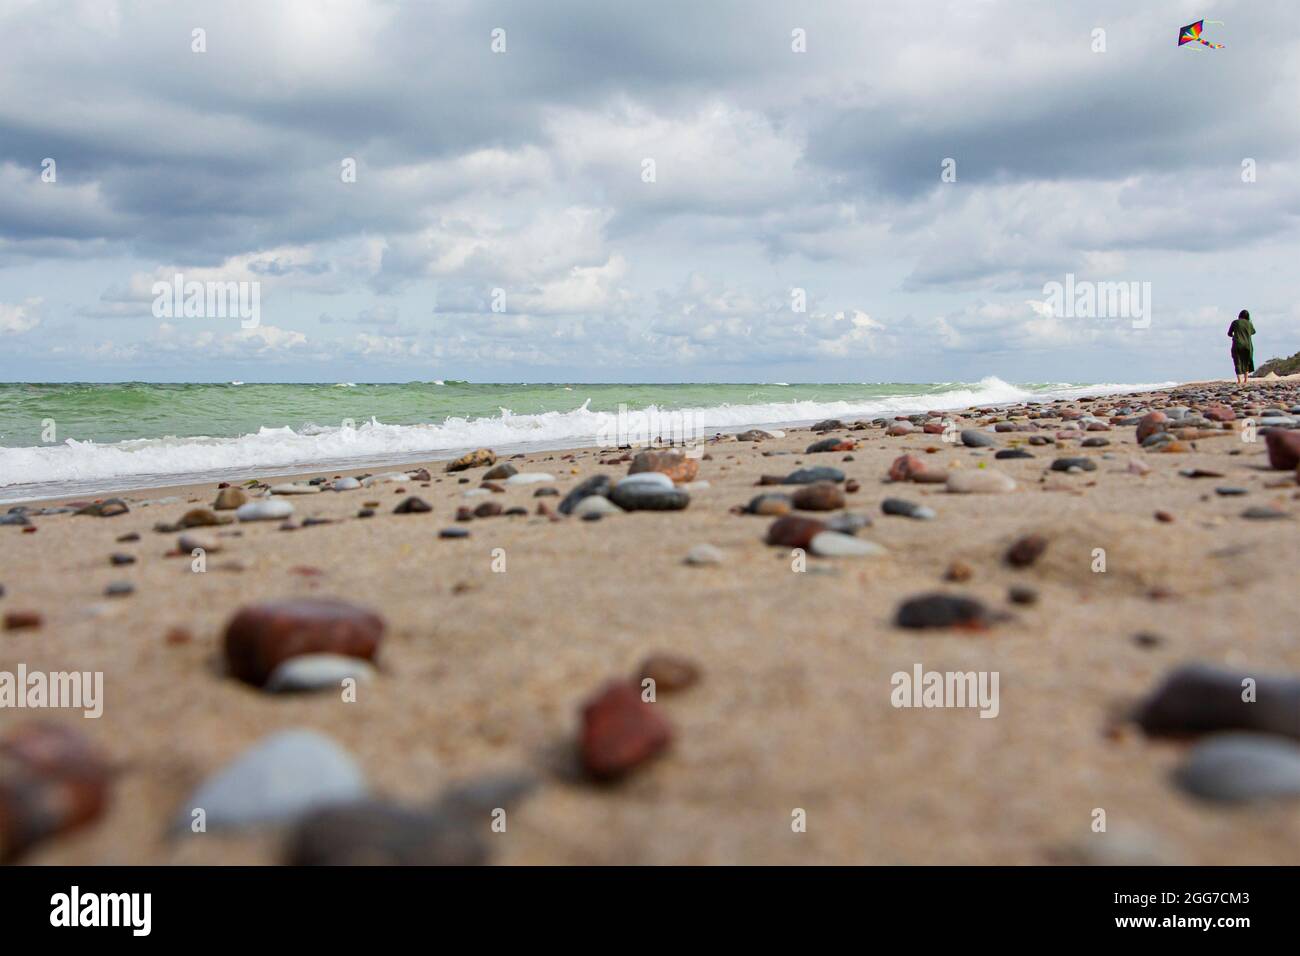 Petits cailloux dispersés sur la plage sable gros plan.faible profondeur de champ.attention sélective sur les pierres de premier plan.UN fond flou de sto multicolore Banque D'Images